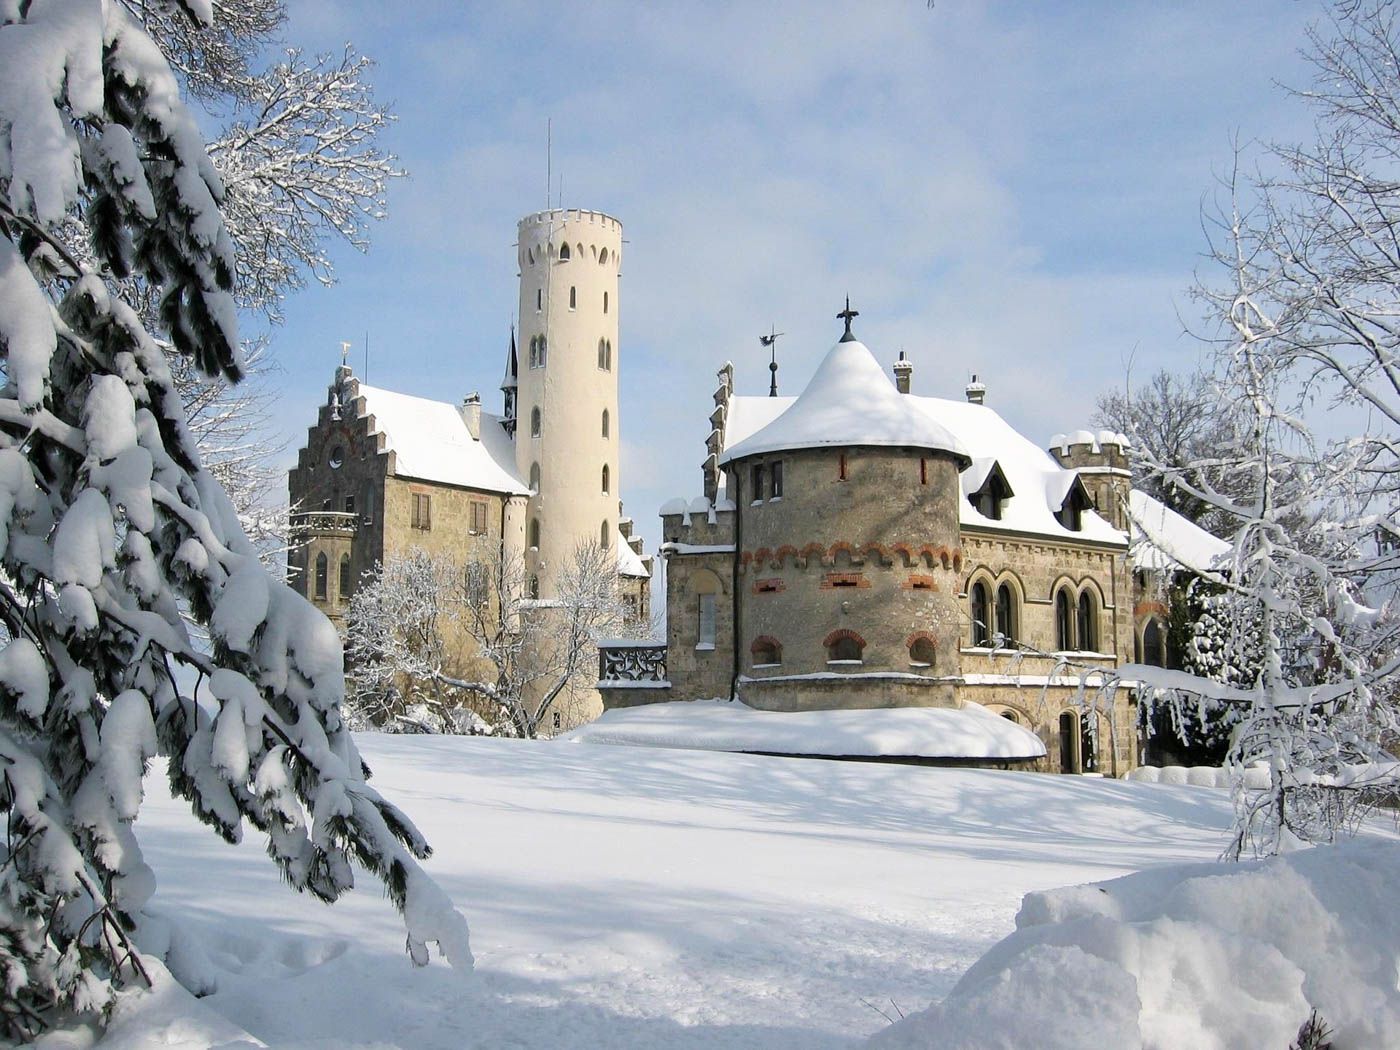 Liechtenstein Travel Costs & Prices - Castles, Hiking, and ...